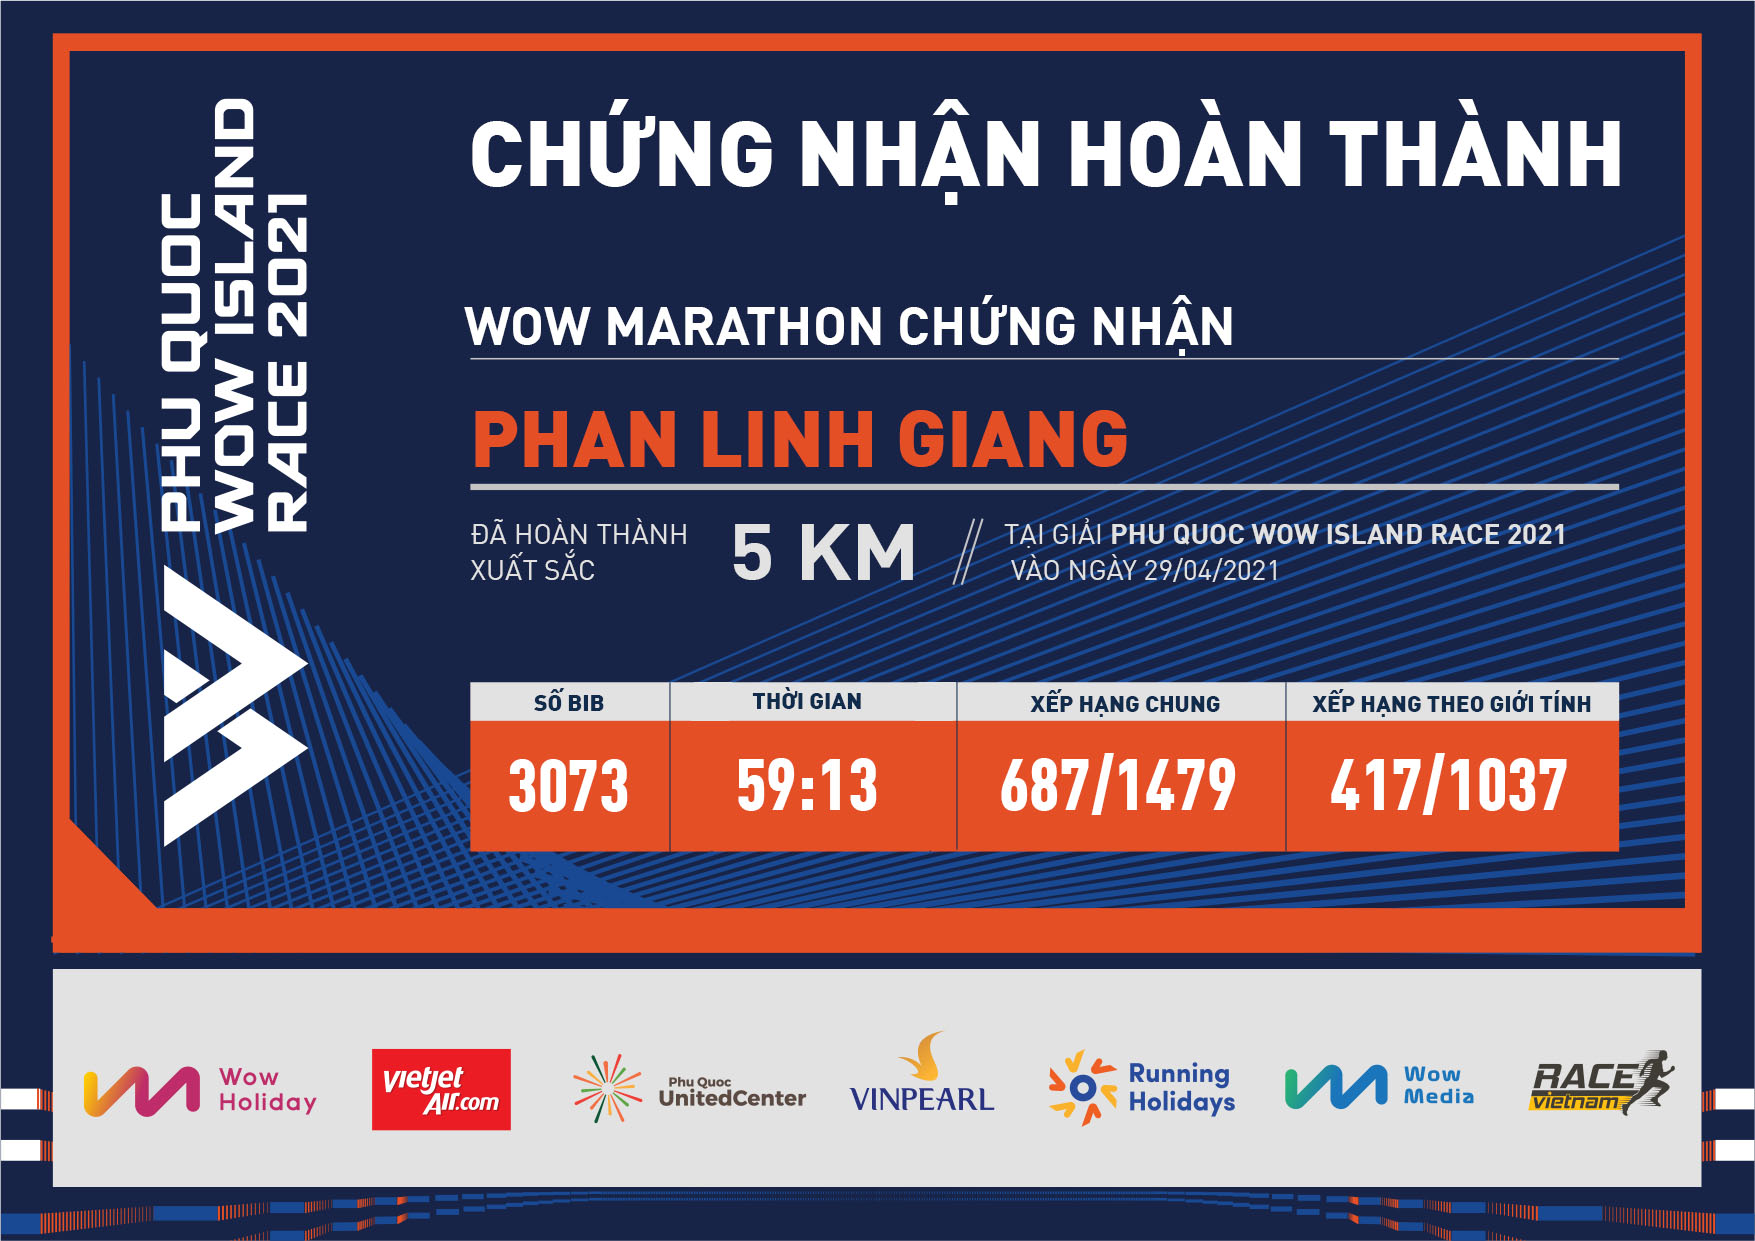 3073 - Phan Linh Giang